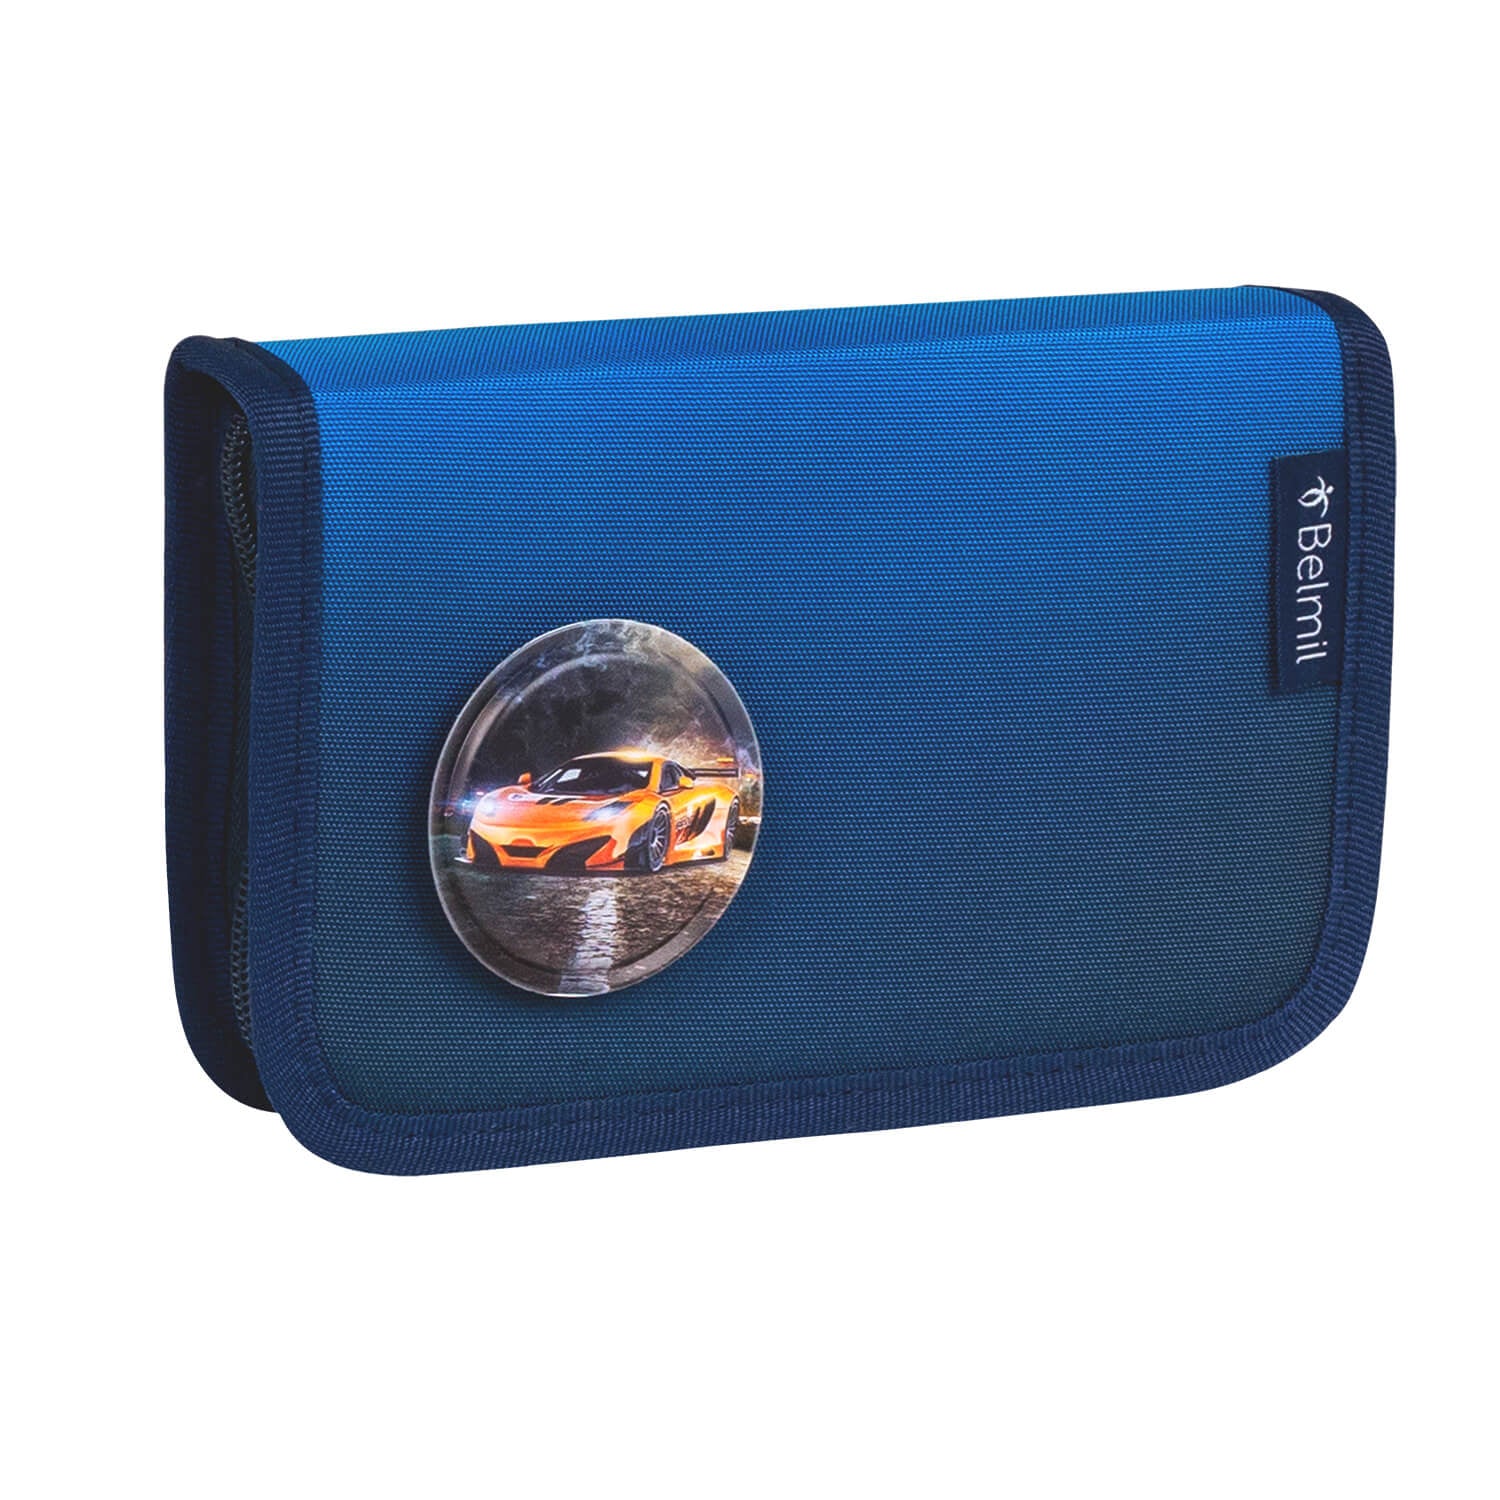 Premium Compact Plus Blue Navy Schoolbag set 5pcs.